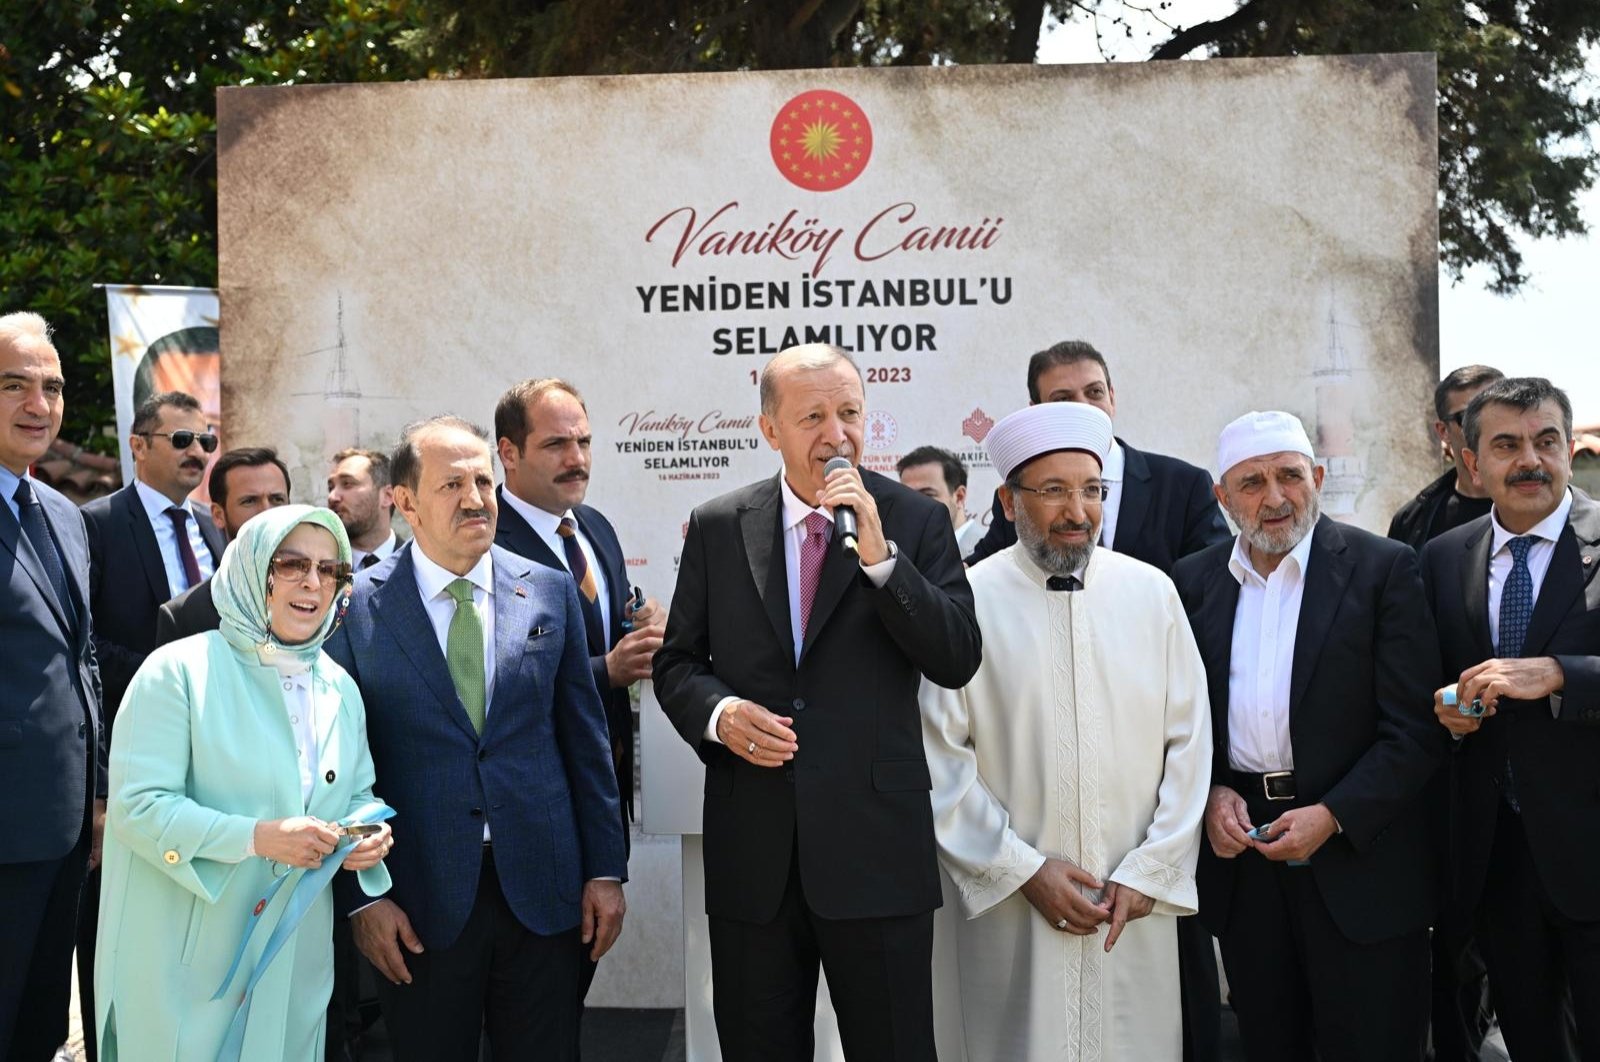 Erdoğan menghadiri pembukaan kembali Masjid Vaniköy abad ke-17 di Istanbul